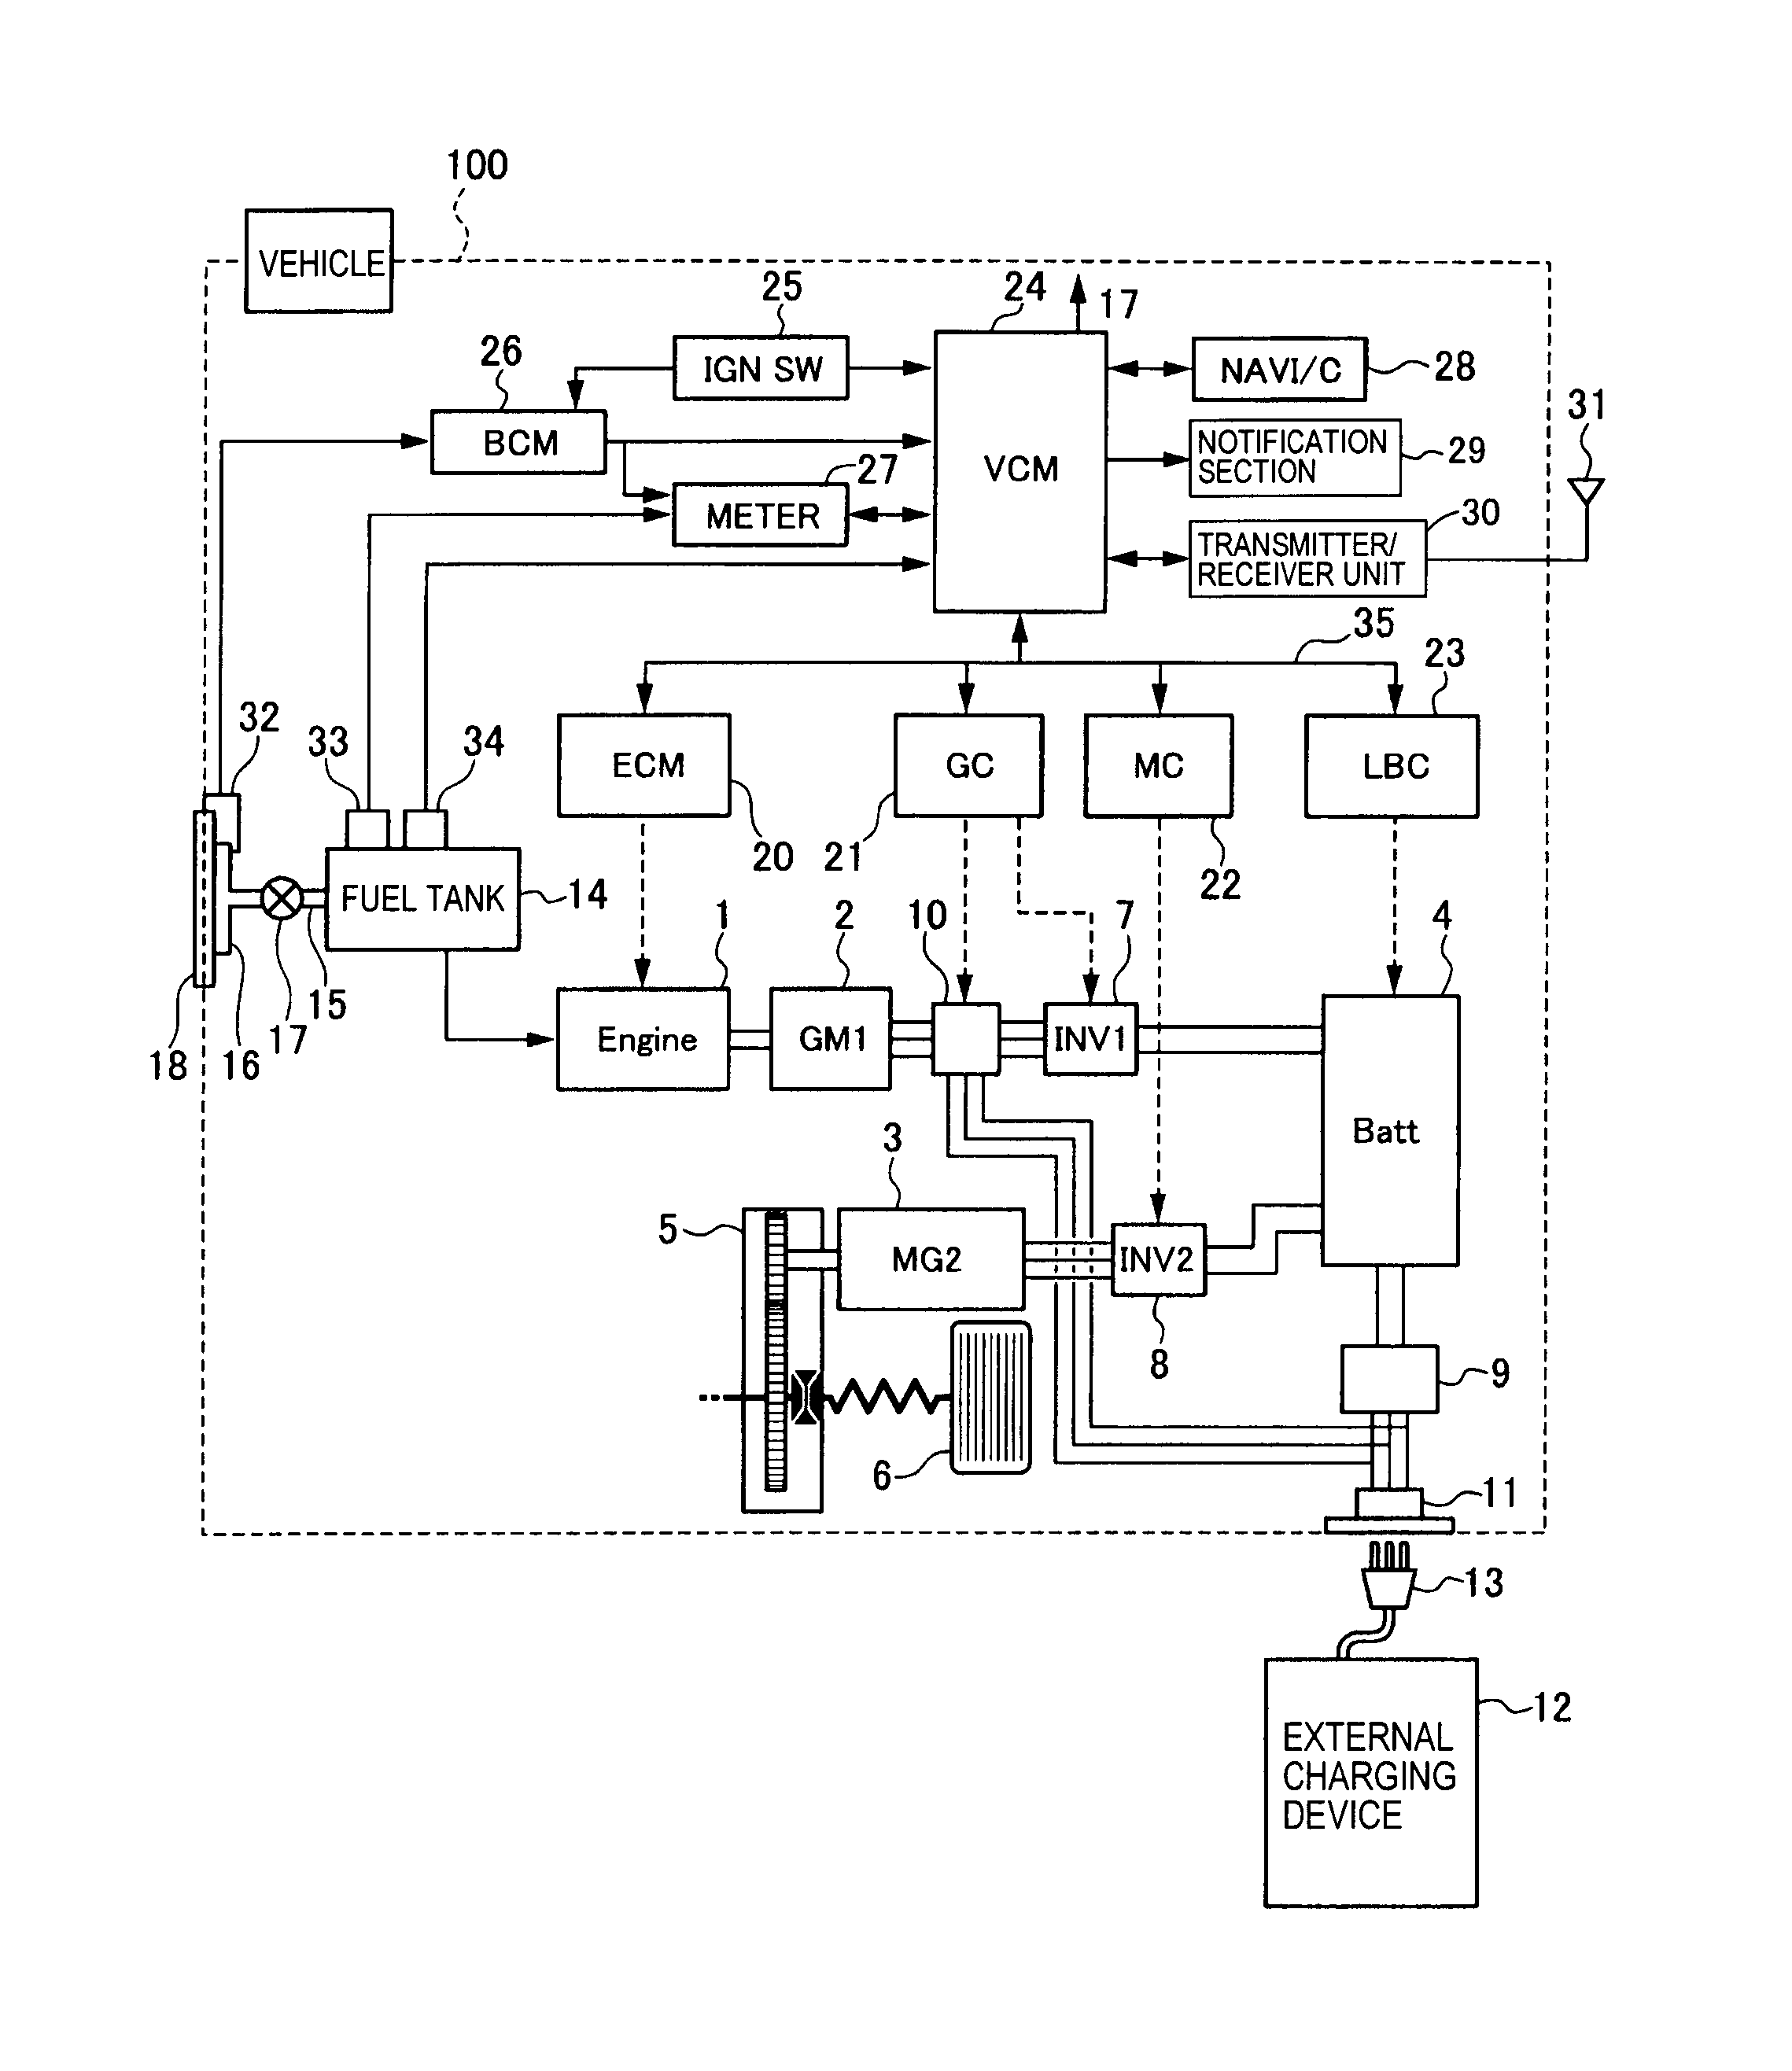 nutone bath fan wiring diagram